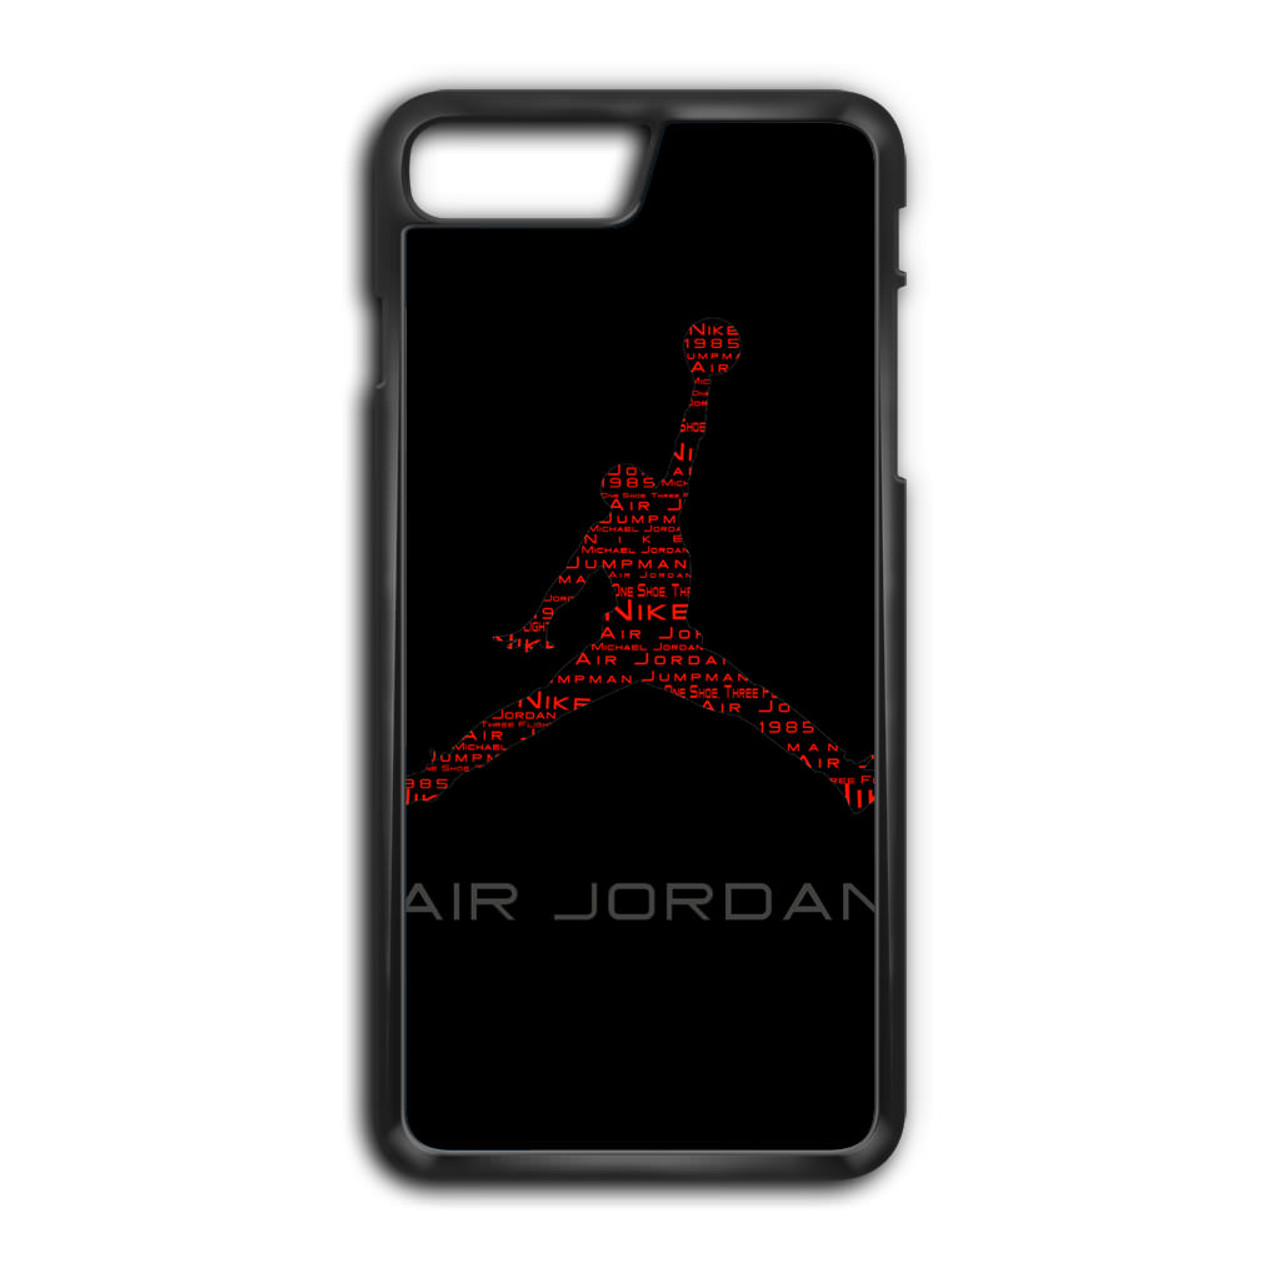 NIKE AIR JORDAN SNEAKERS iPhone 7 / 8 Plus Case Cover